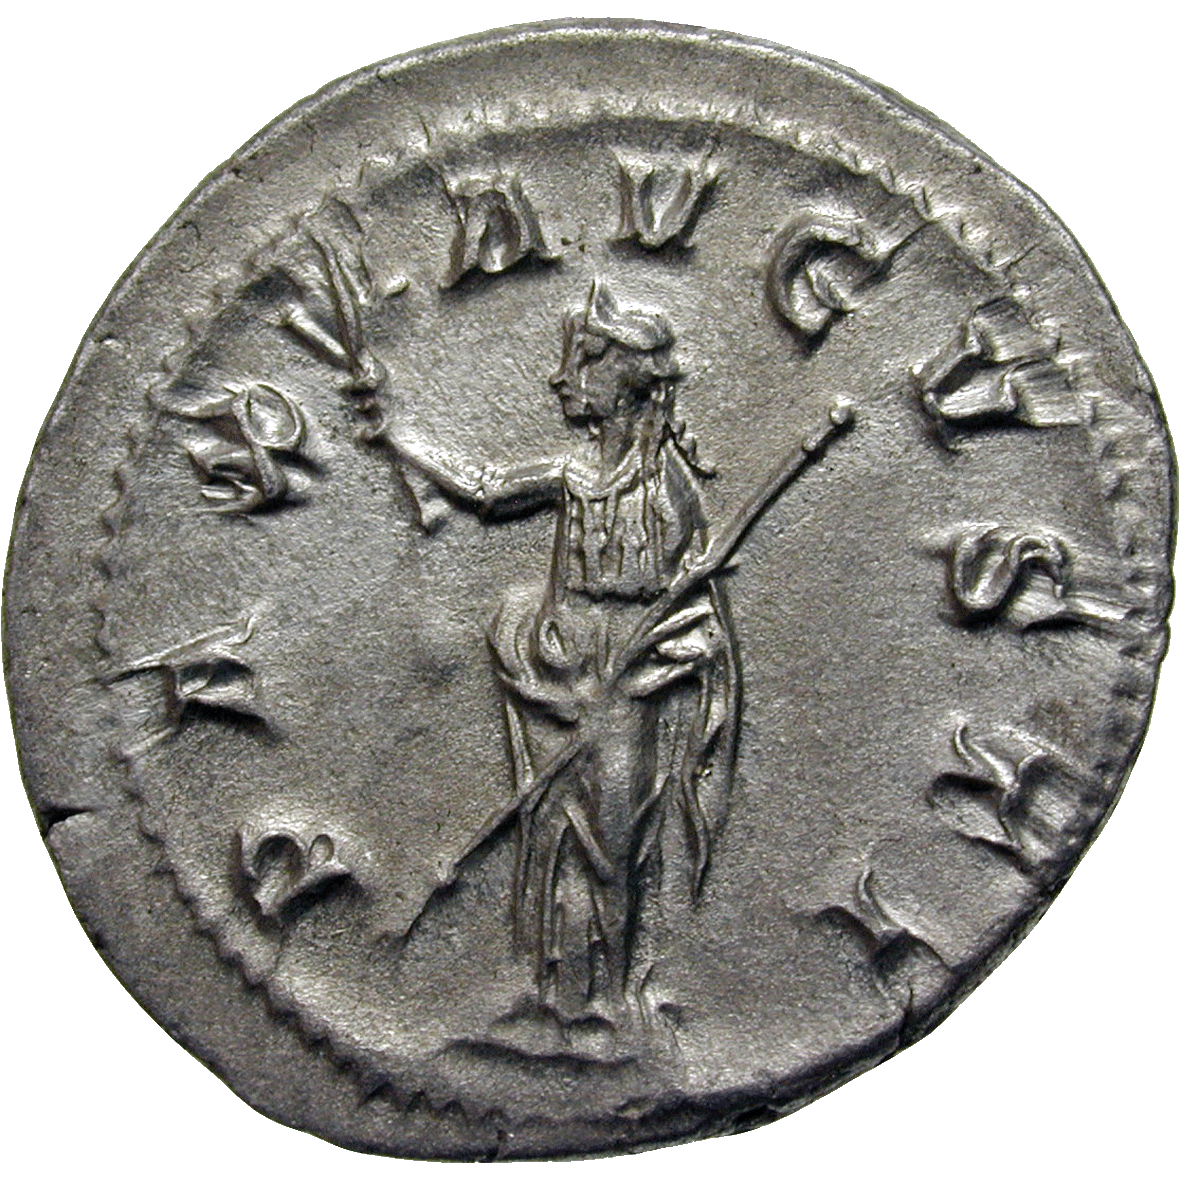 Roman Empire, Maximinus Thrax, Denarius (reverse)